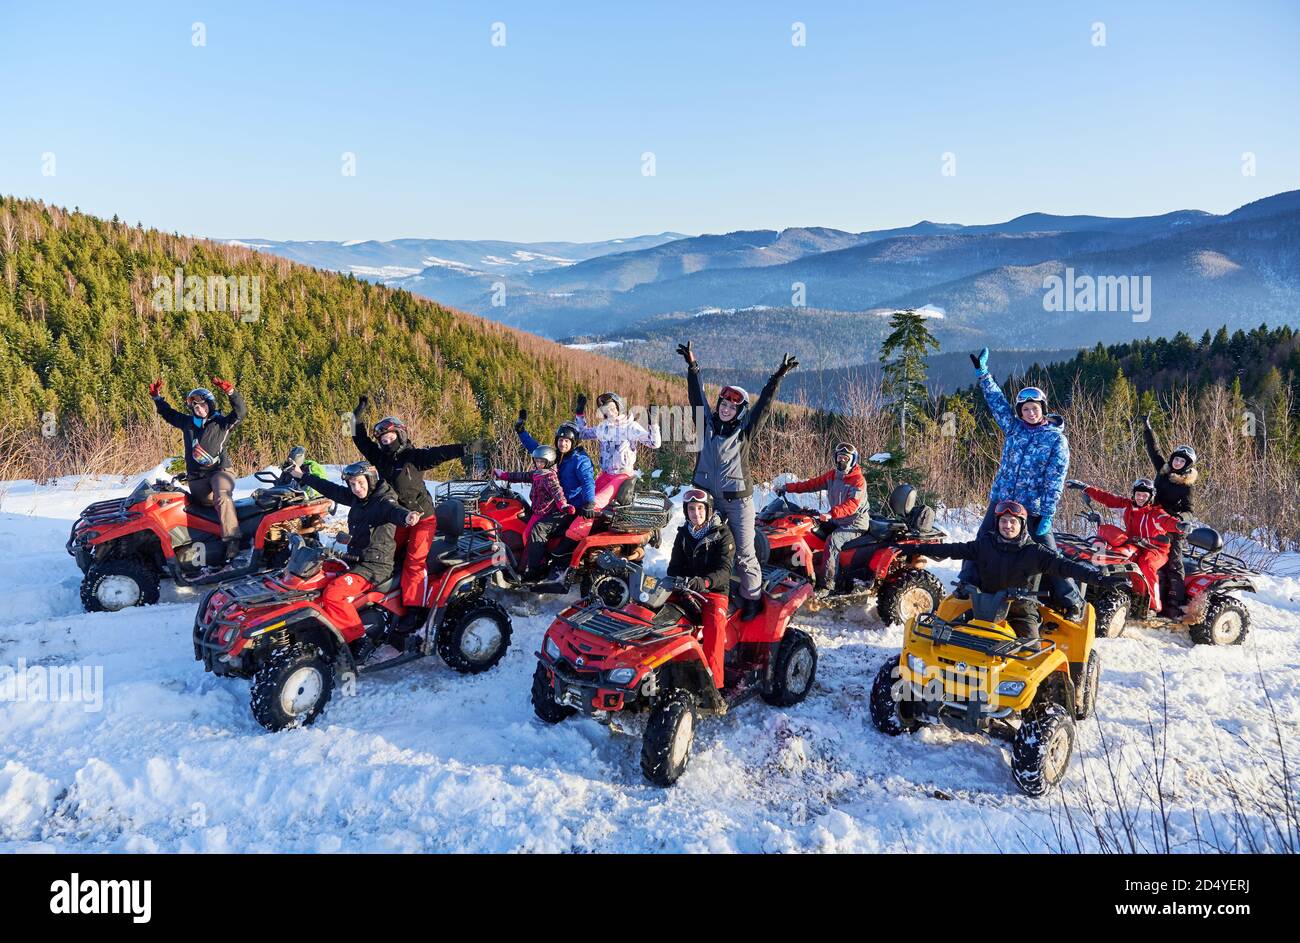 Yaremche, Ukraine - 02. Februar 2020: Gruppe von fröhlichen Menschen sitzen auf ATV-Bikes, Spaß an schönen Wintertag in verschneiten Bergen, atemberaubende Bergrücken im Hintergrund. Stockfoto